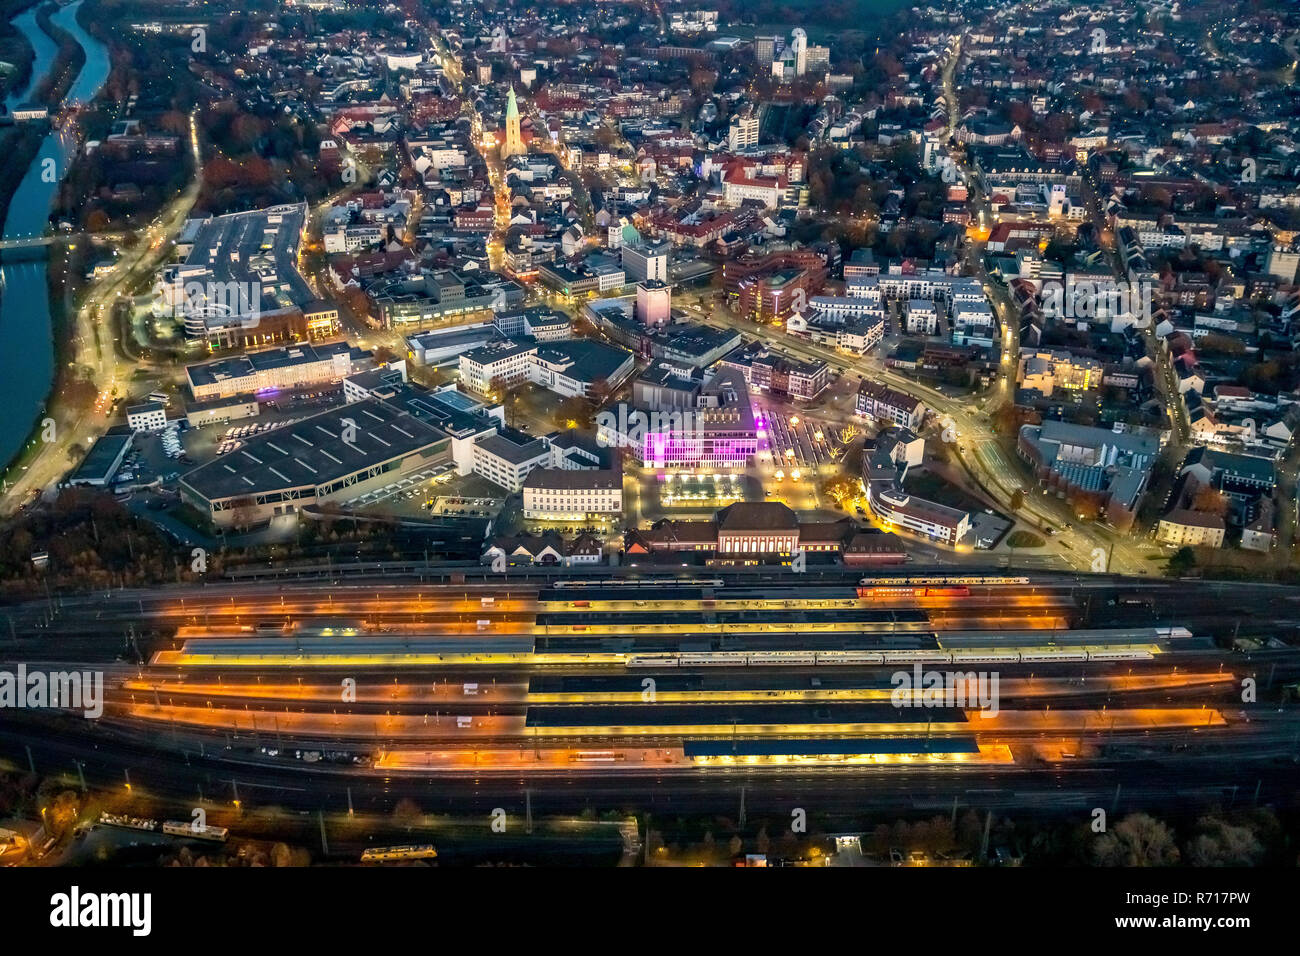 Luftaufnahme, Stadtzentrum, Nacht Foto mit Hauptbahnhof, Hamm, Ruhrgebiet, Nordrhein-Westfalen, Deutschland Stockfoto